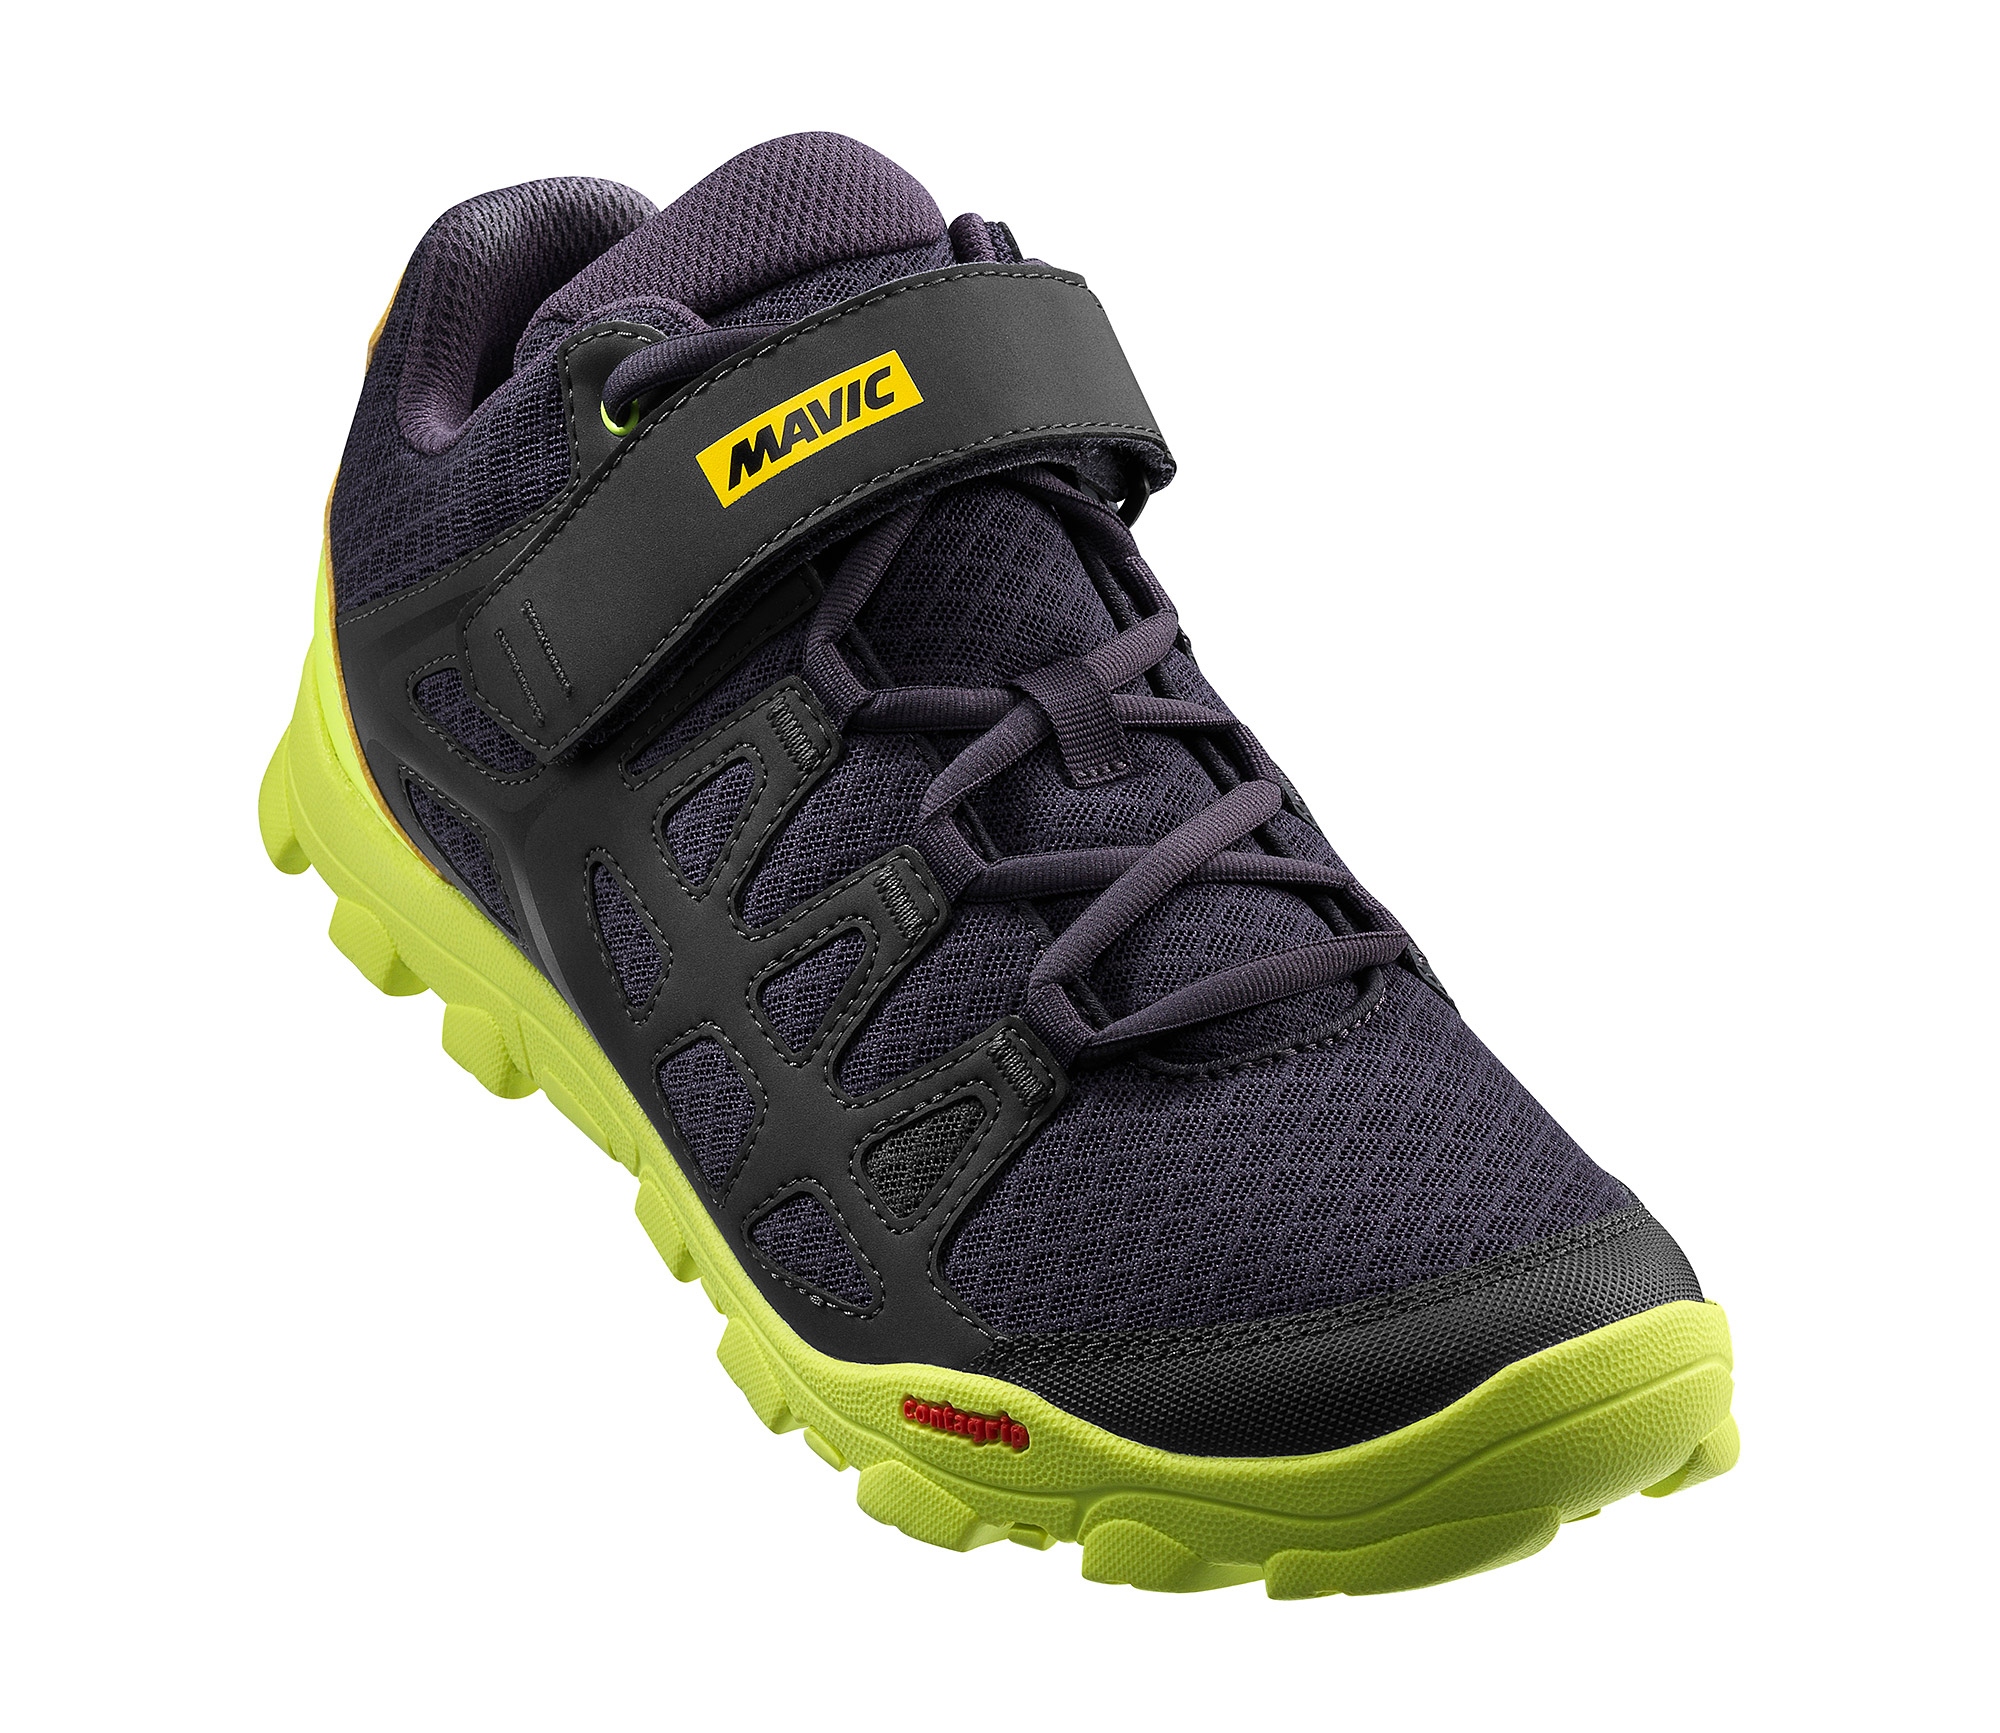 Взуття Mavic CROSSRIDE, розмір UK 12,5 (48, 303мм) Pirate Black/Safety Yellow чорно-жовта фото 